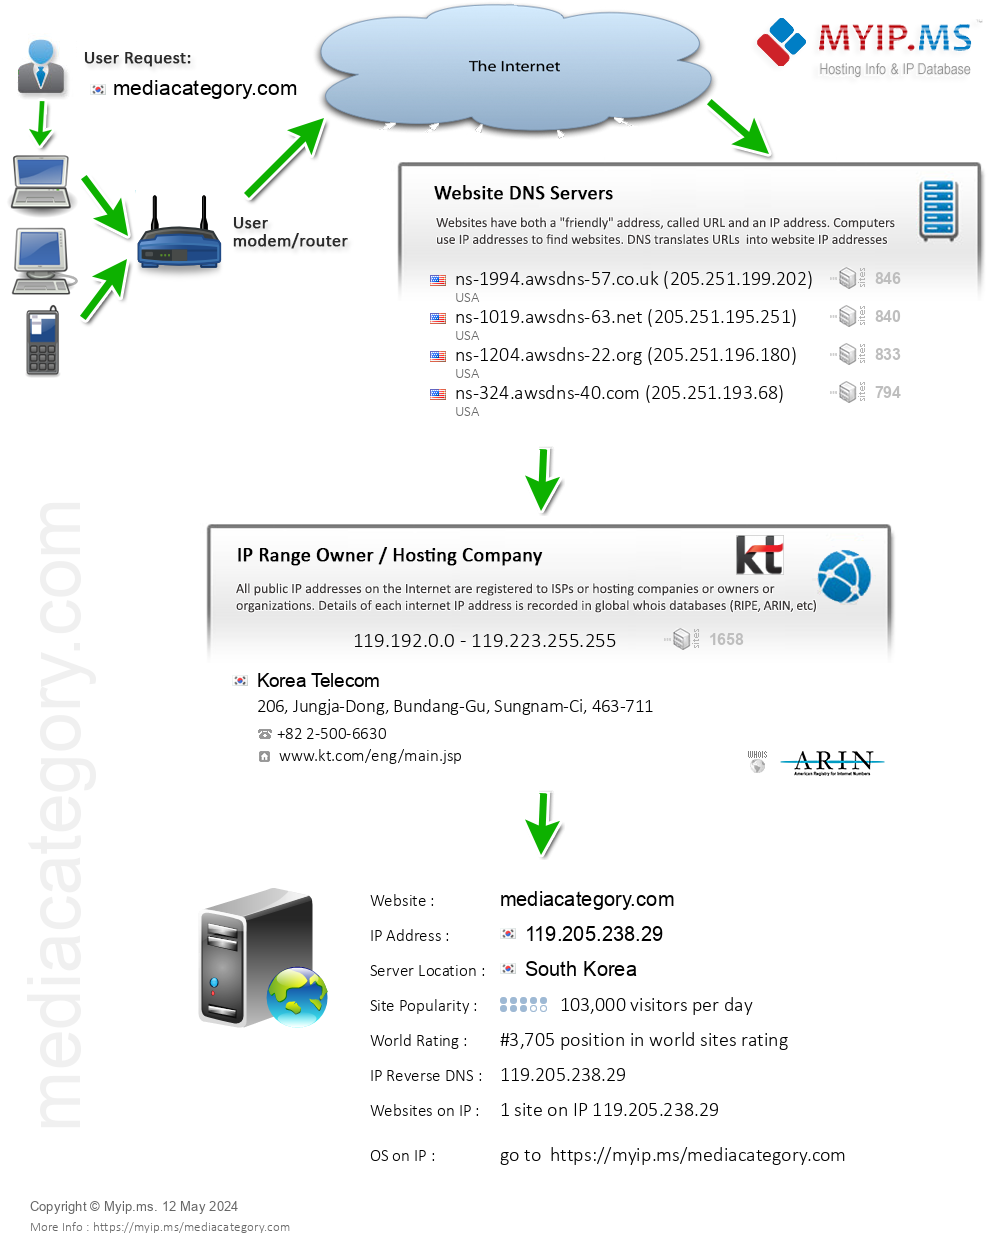 Mediacategory.com - Website Hosting Visual IP Diagram